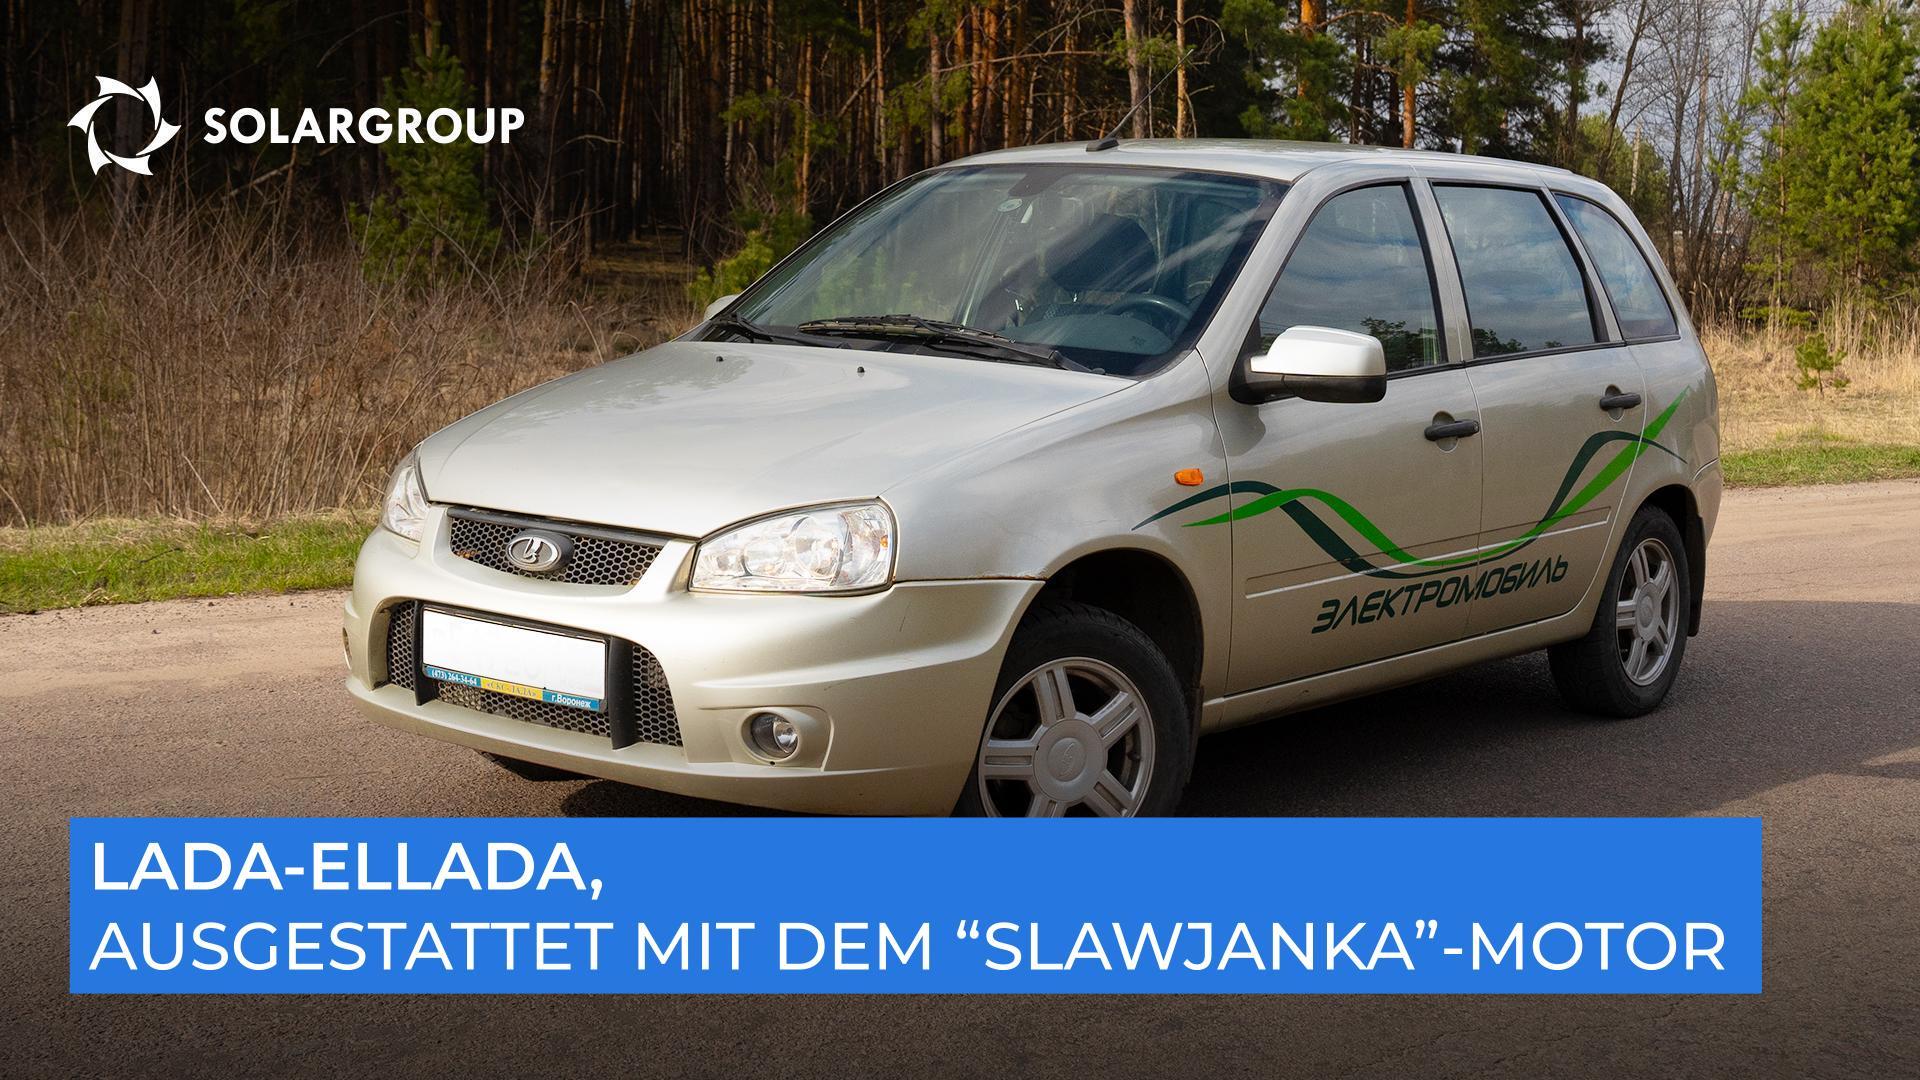 Schnell, leise und robust: Was haben die Lauftests des Elektroautos, ausgestattet mit dem "Slawjanka"-Motor, ergeben?